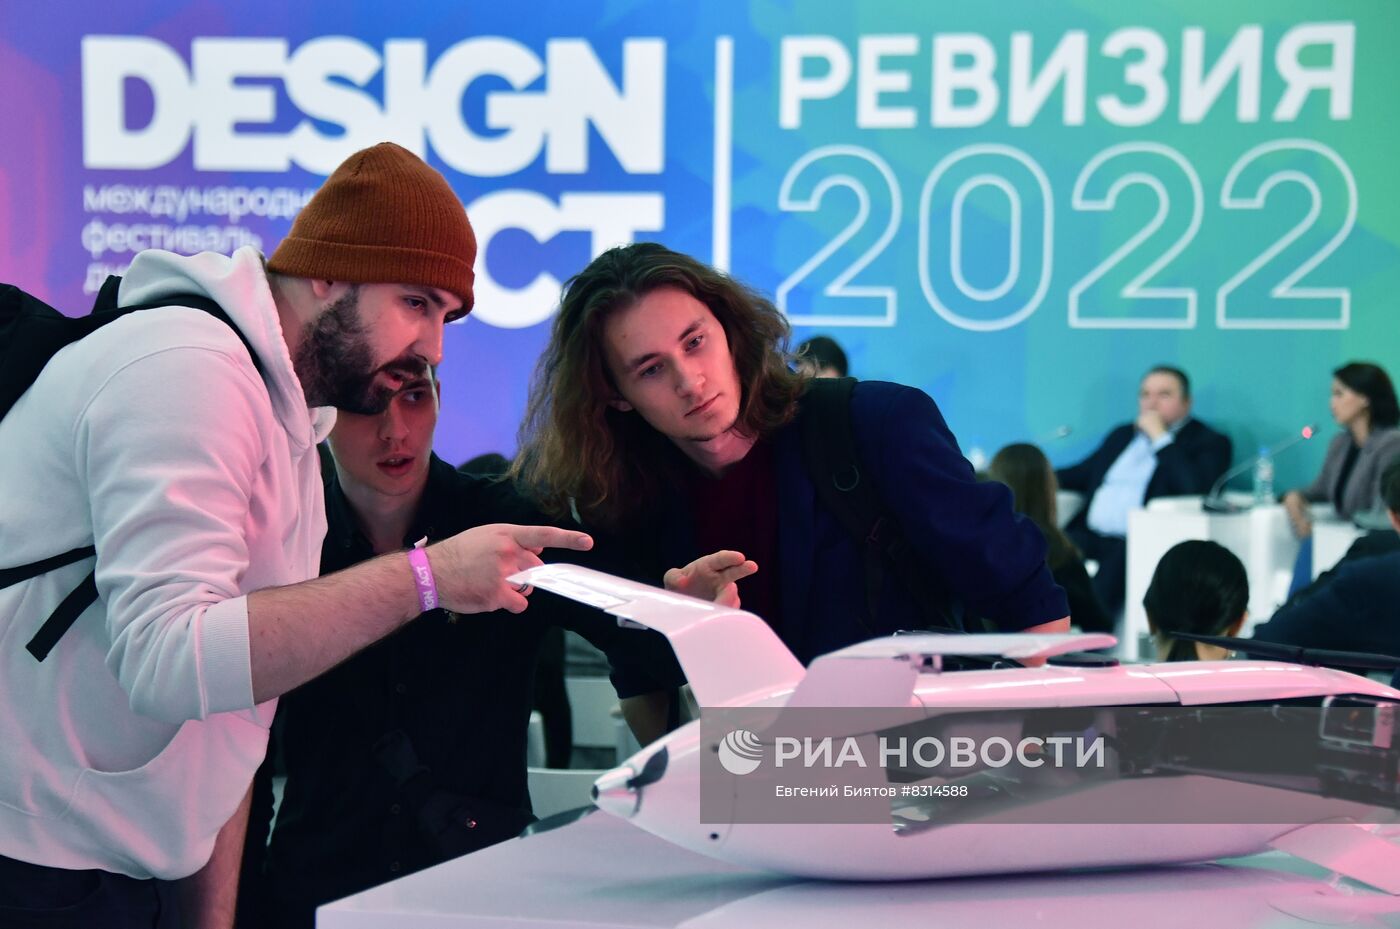 Международный фестиваль дизайна Design Act